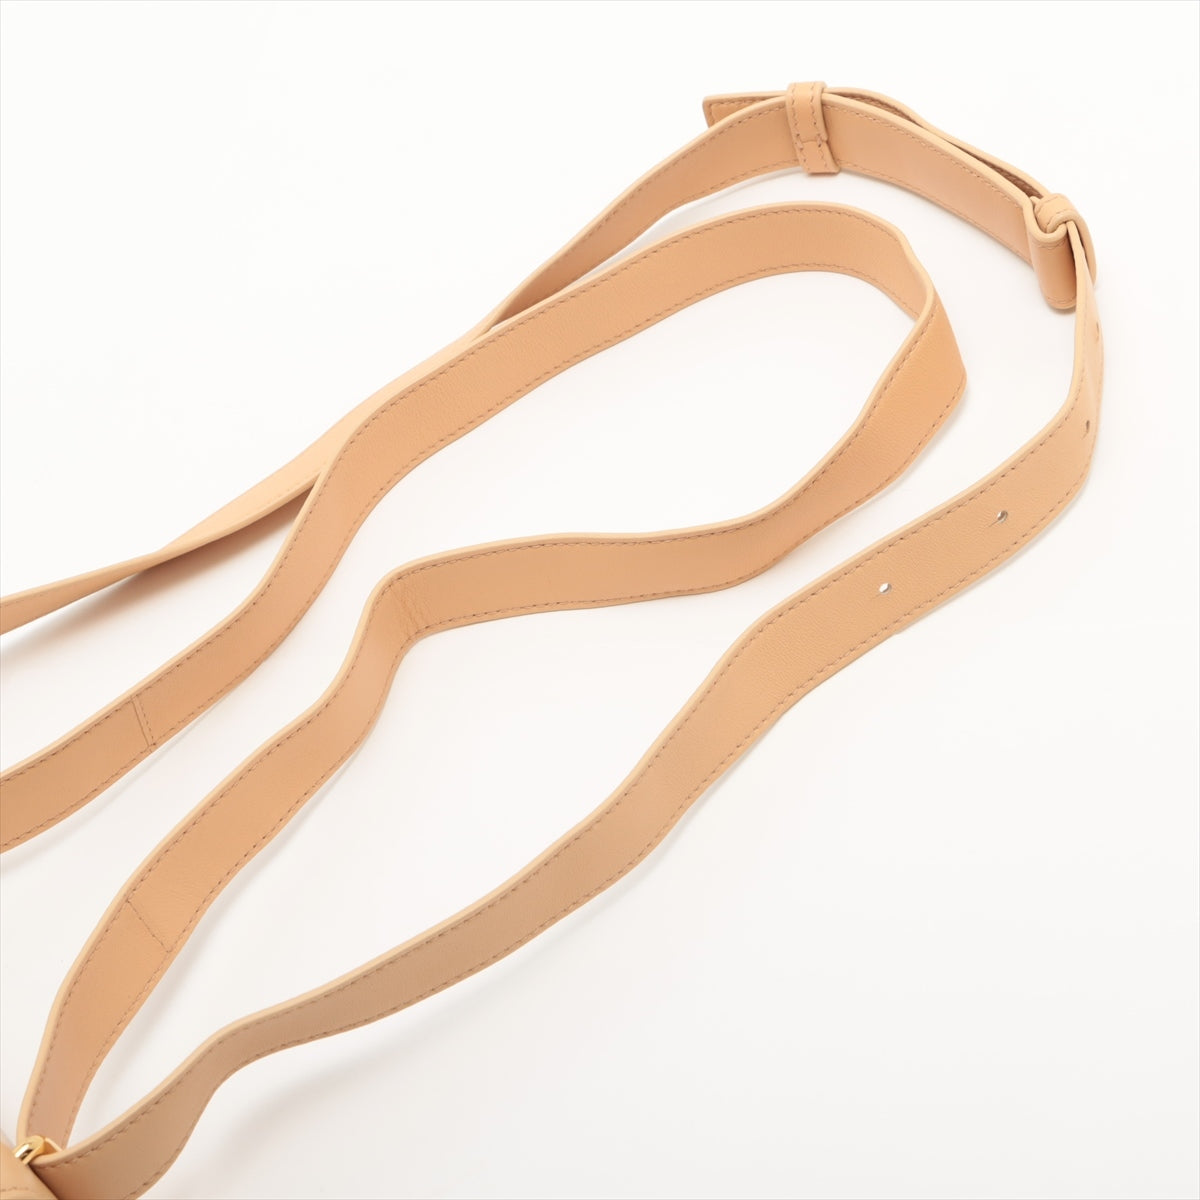 Bottega Veneta clips Leather Shoulder bag Beige